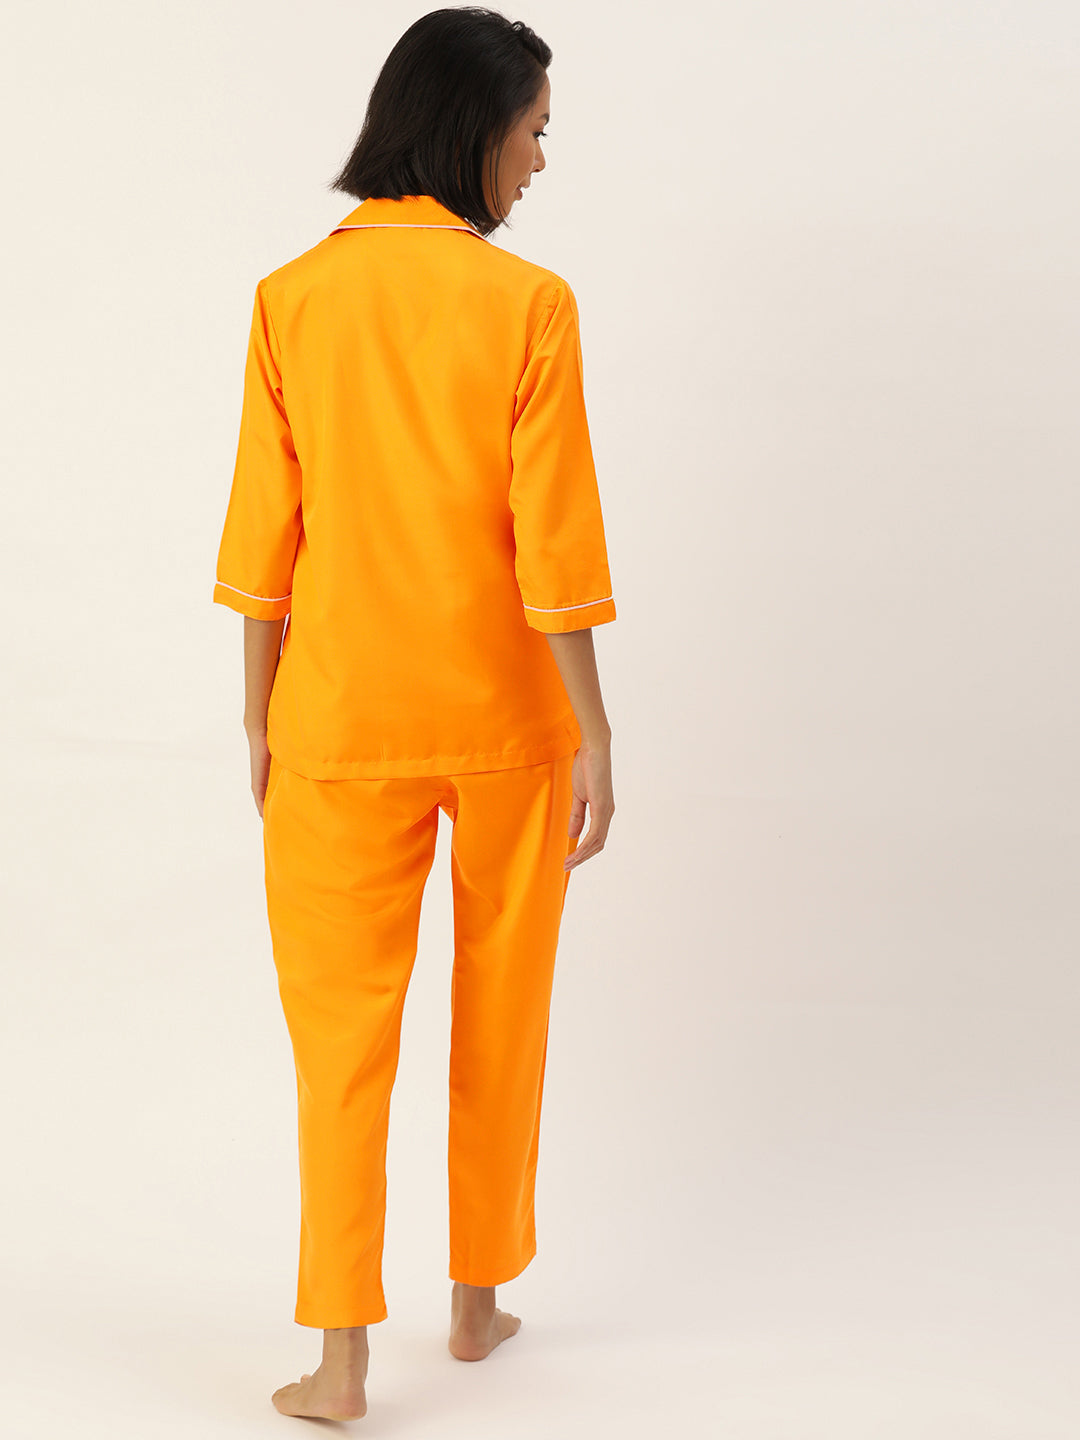 Women's Mustard Night suit ( LNS 001Mustard ) - Jainish